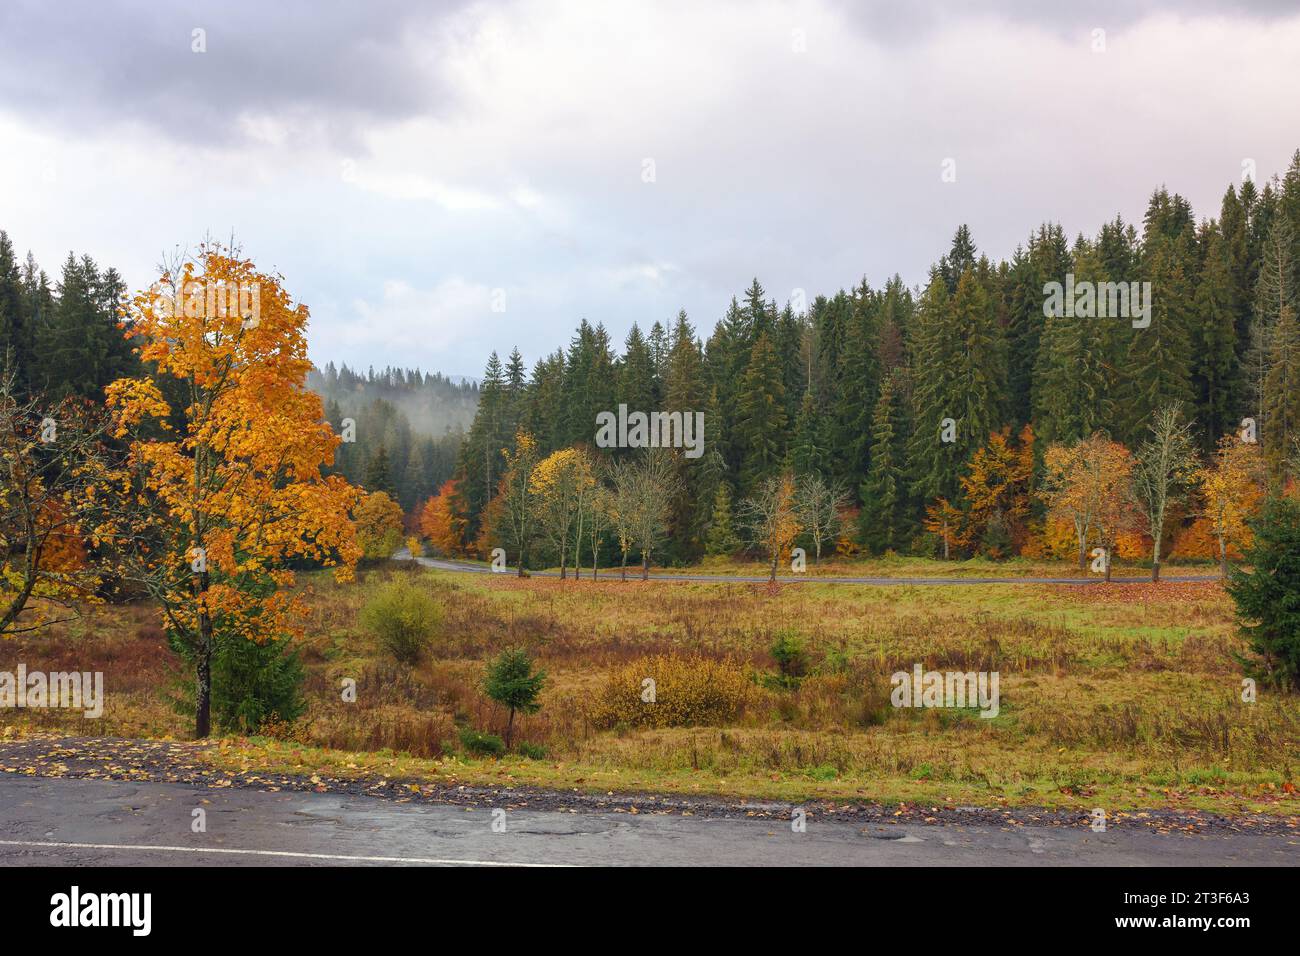 Die Straße führt im Herbst durch ein bewaldetes Tal. Regnerisches Wetter mit bewölktem Himmel Stockfoto